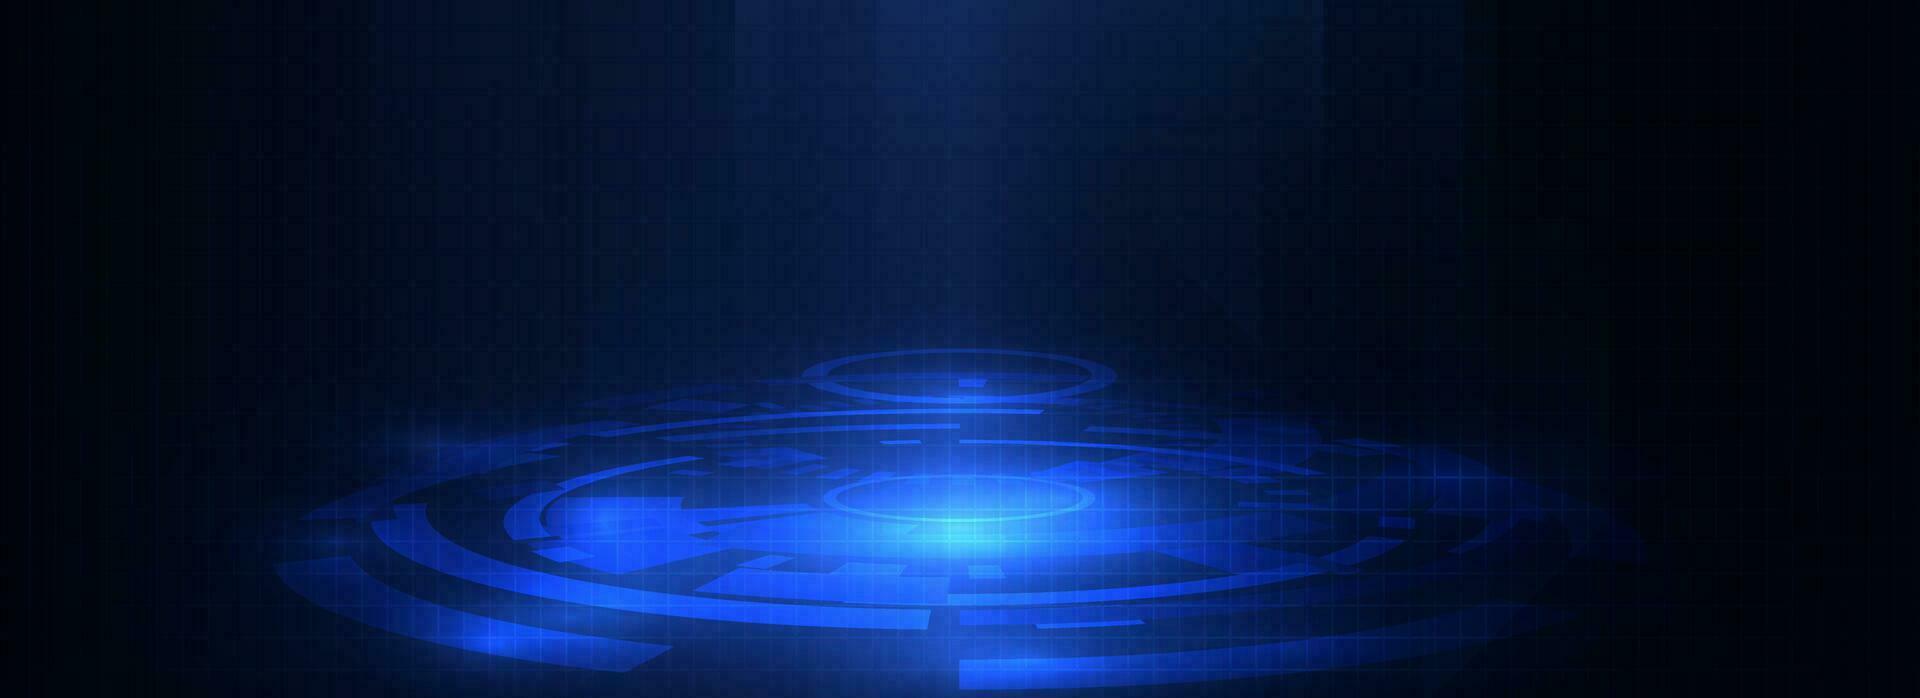 gloeiend blauw technologie cirkel futuristische achtergrond concept vector